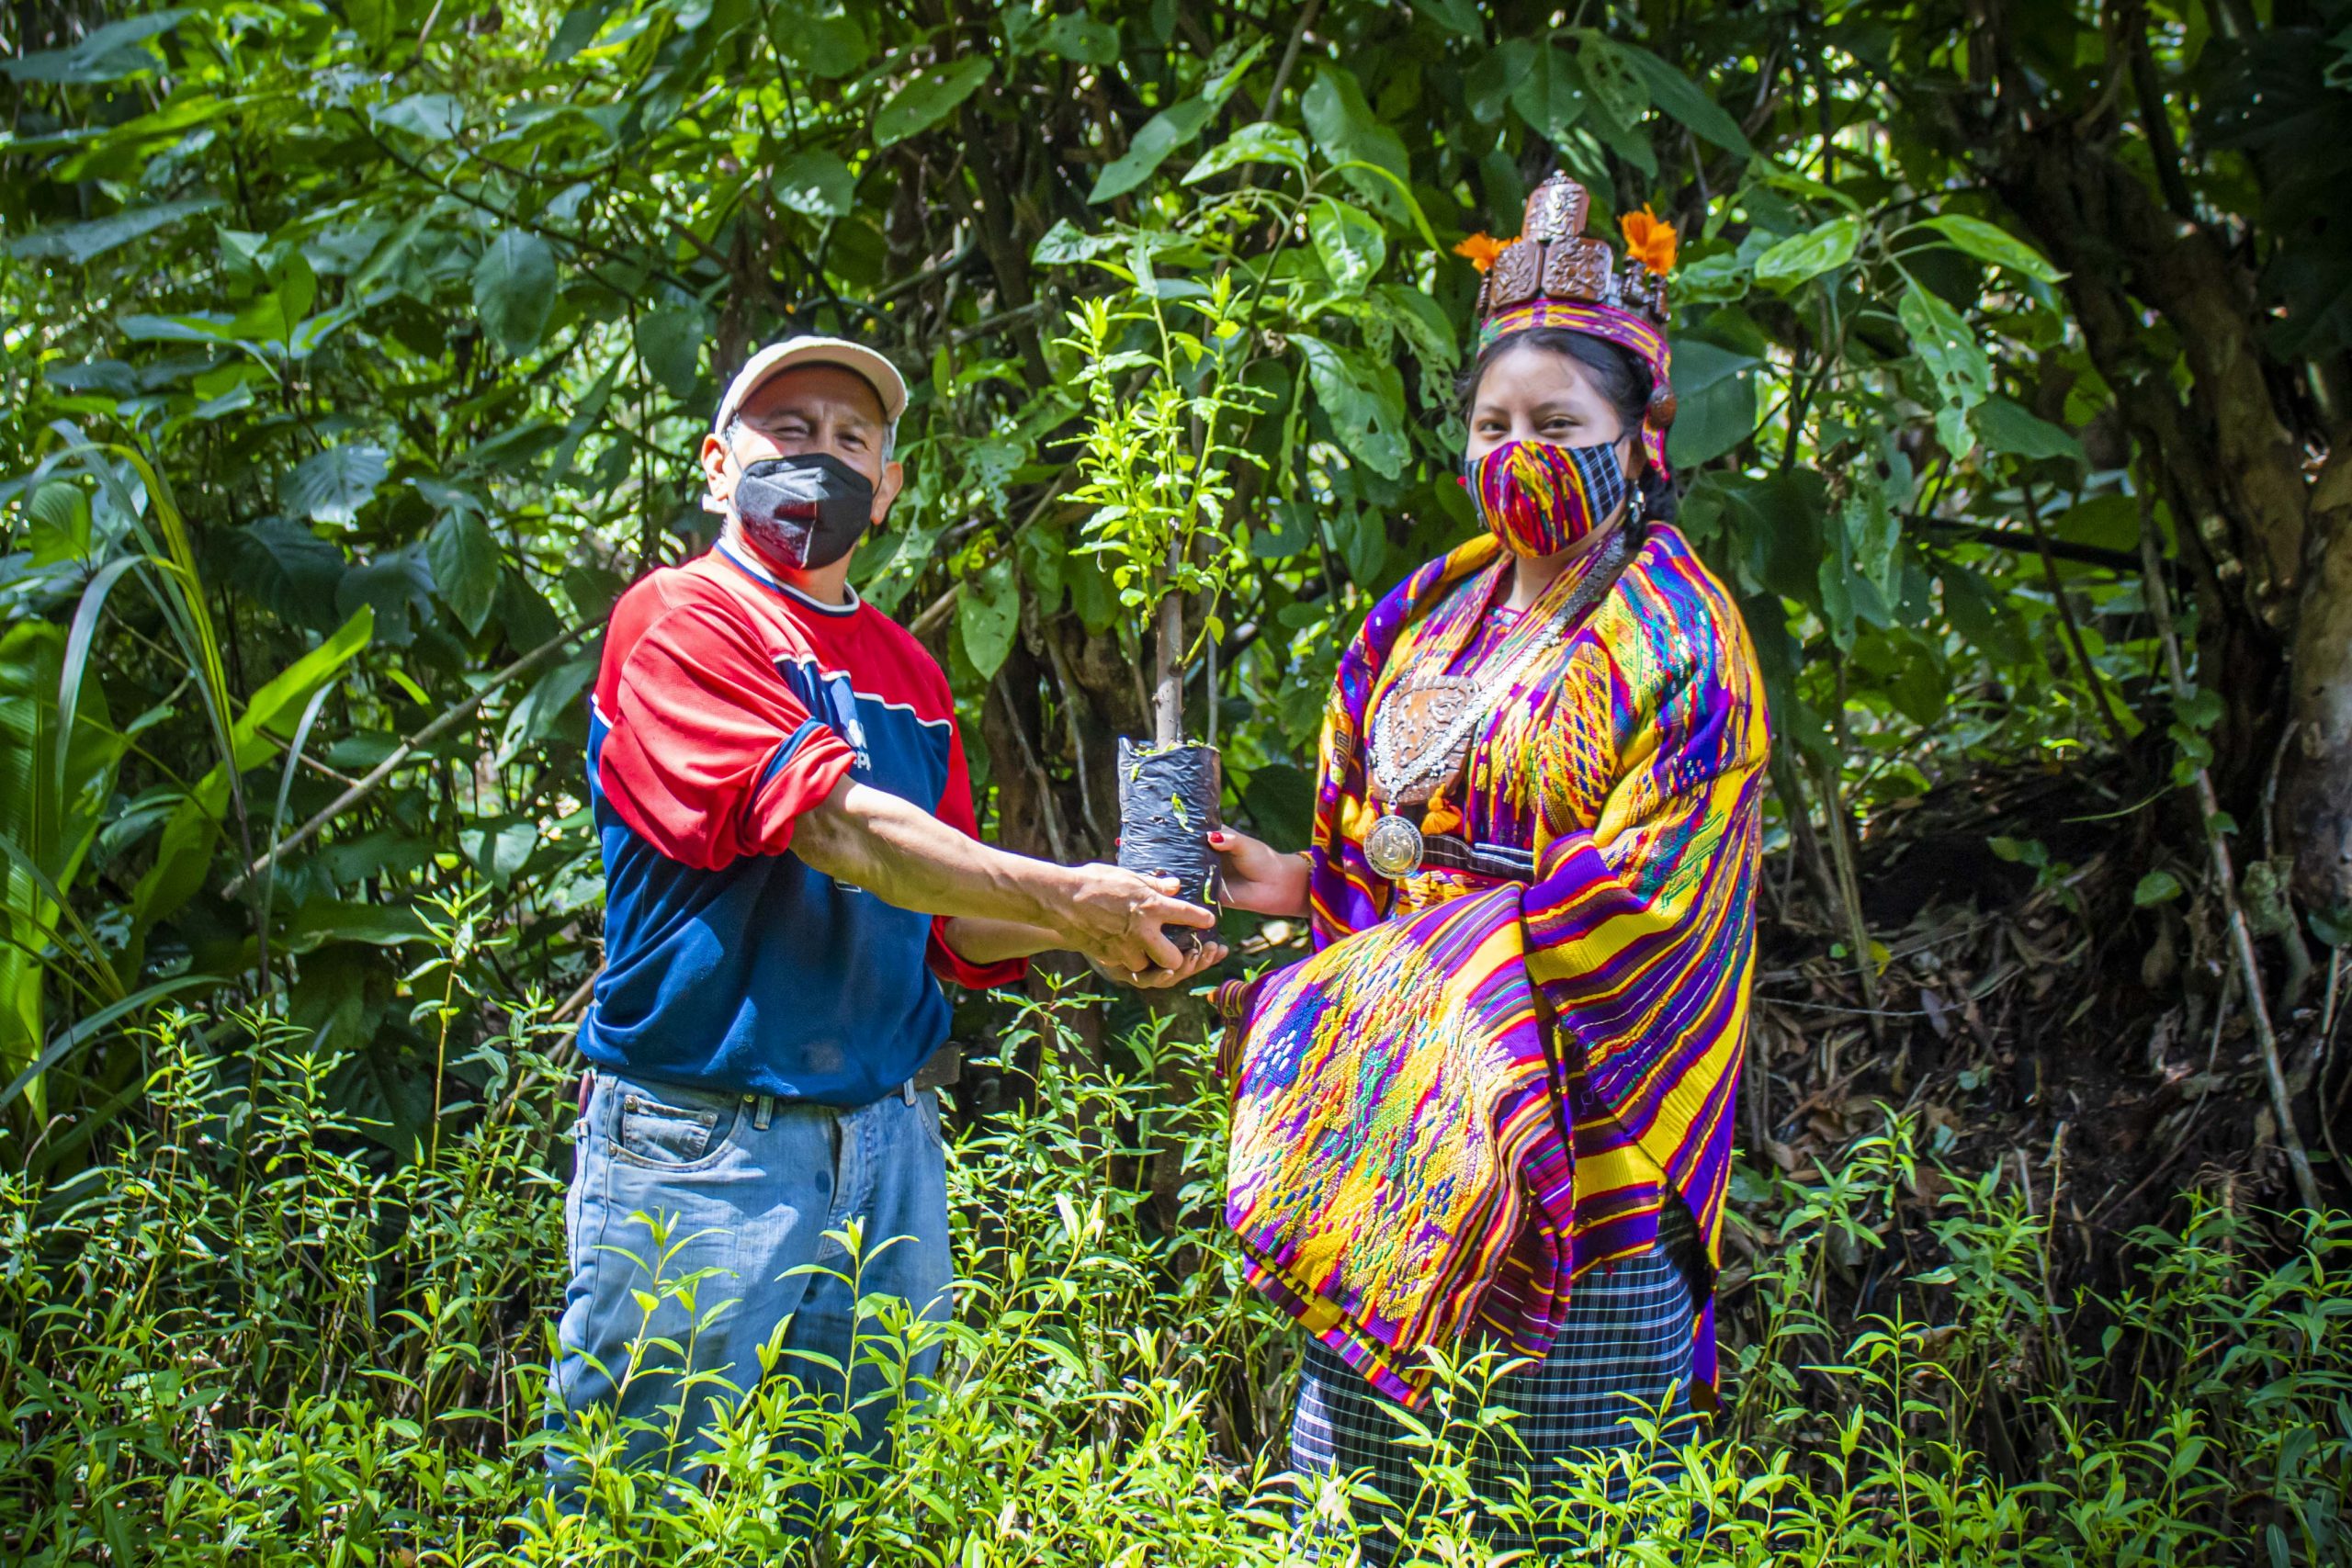 Reina Indígena sanjuanera anuncia donación de 500 árboles para reforestar  San Juan Sacatepéquez - Sanjuansac.com